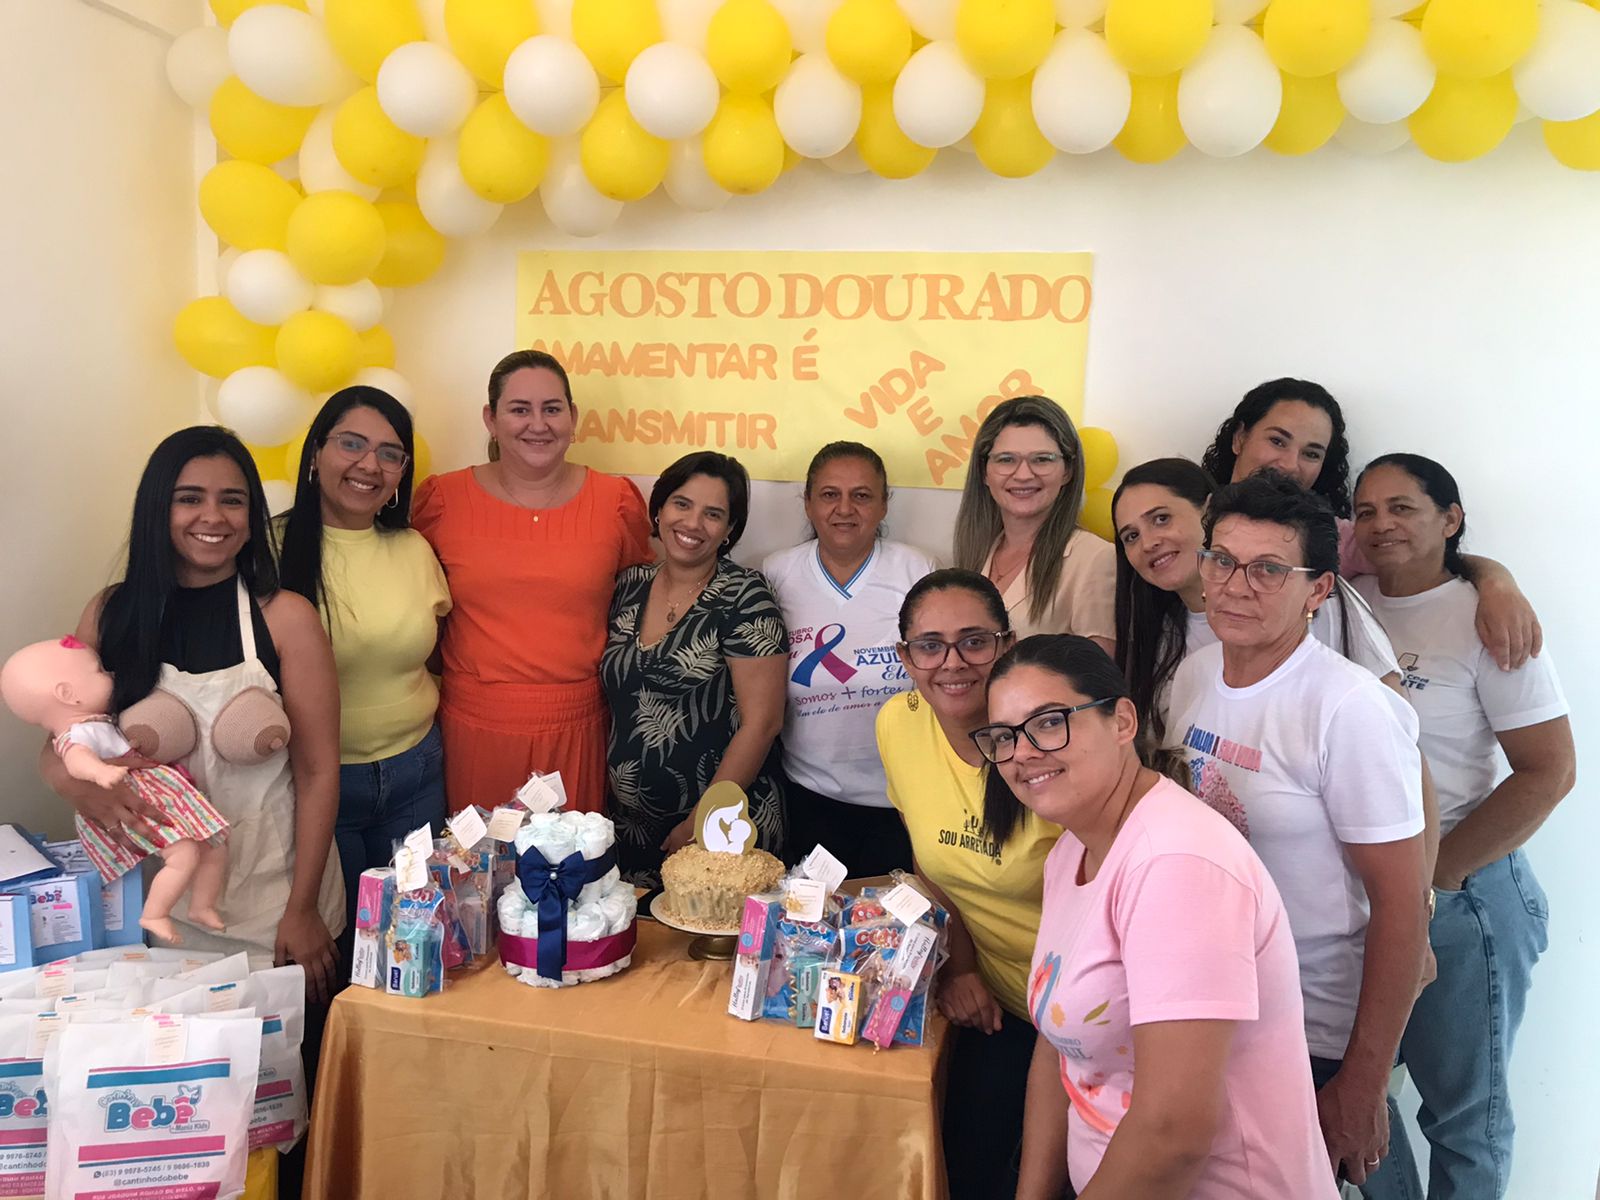 Agosto-Dourado-1 Secretaria de Saúde de Monteiro realiza ações na Campanha do Agosto Dourado para estimular a amamentação